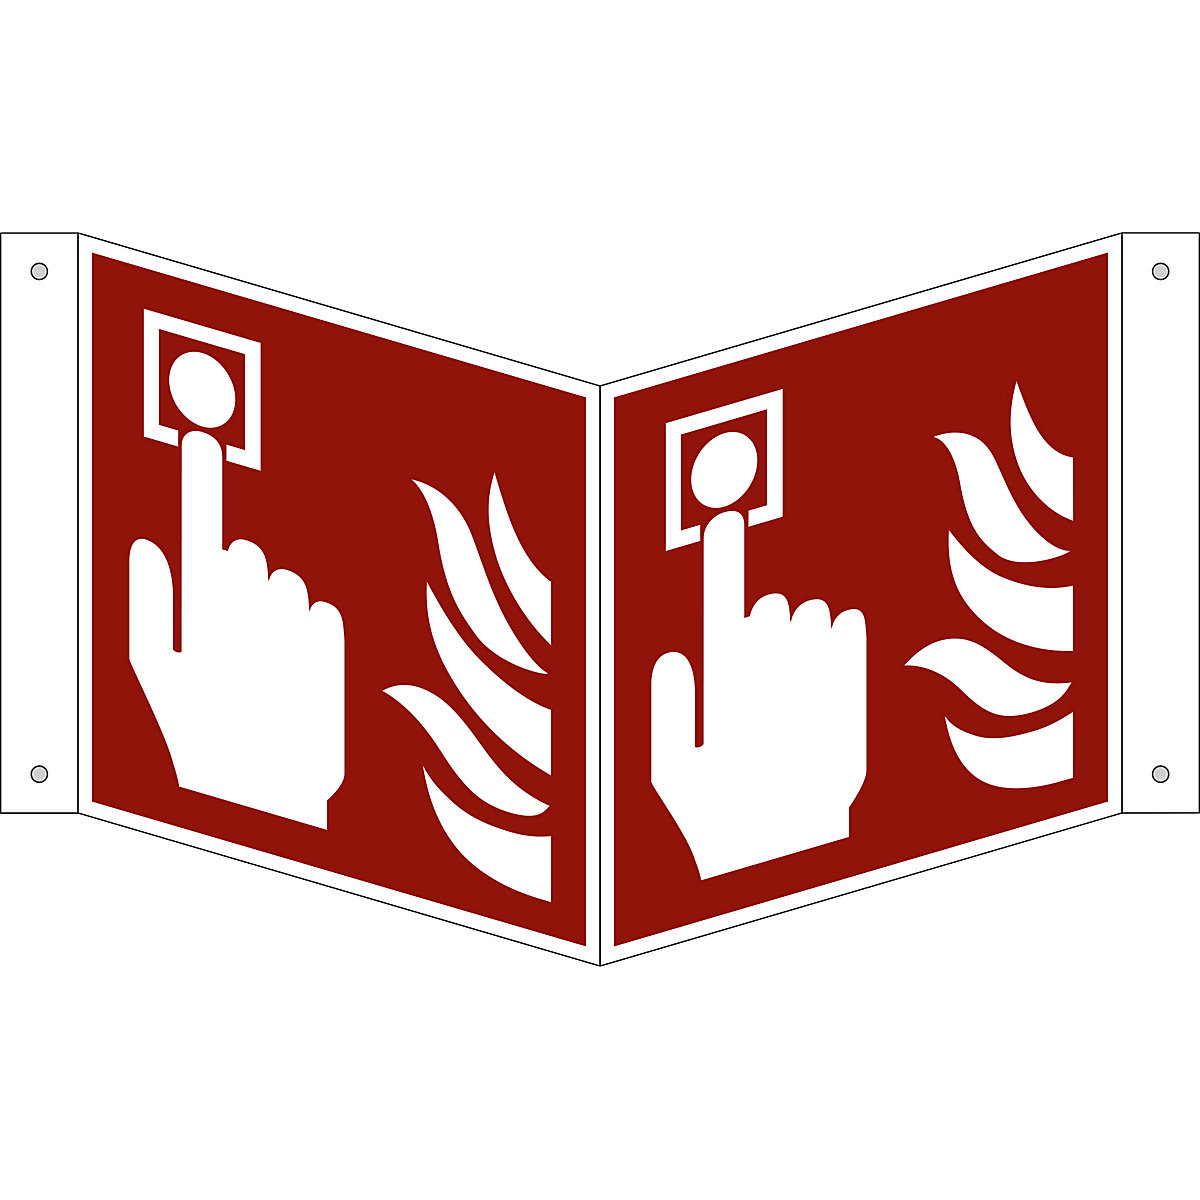 Značka pro ochranu proti požáru, požární hlásič, bal.j. 10 ks, plast, vysunutý štítek, 150 x 150 mm